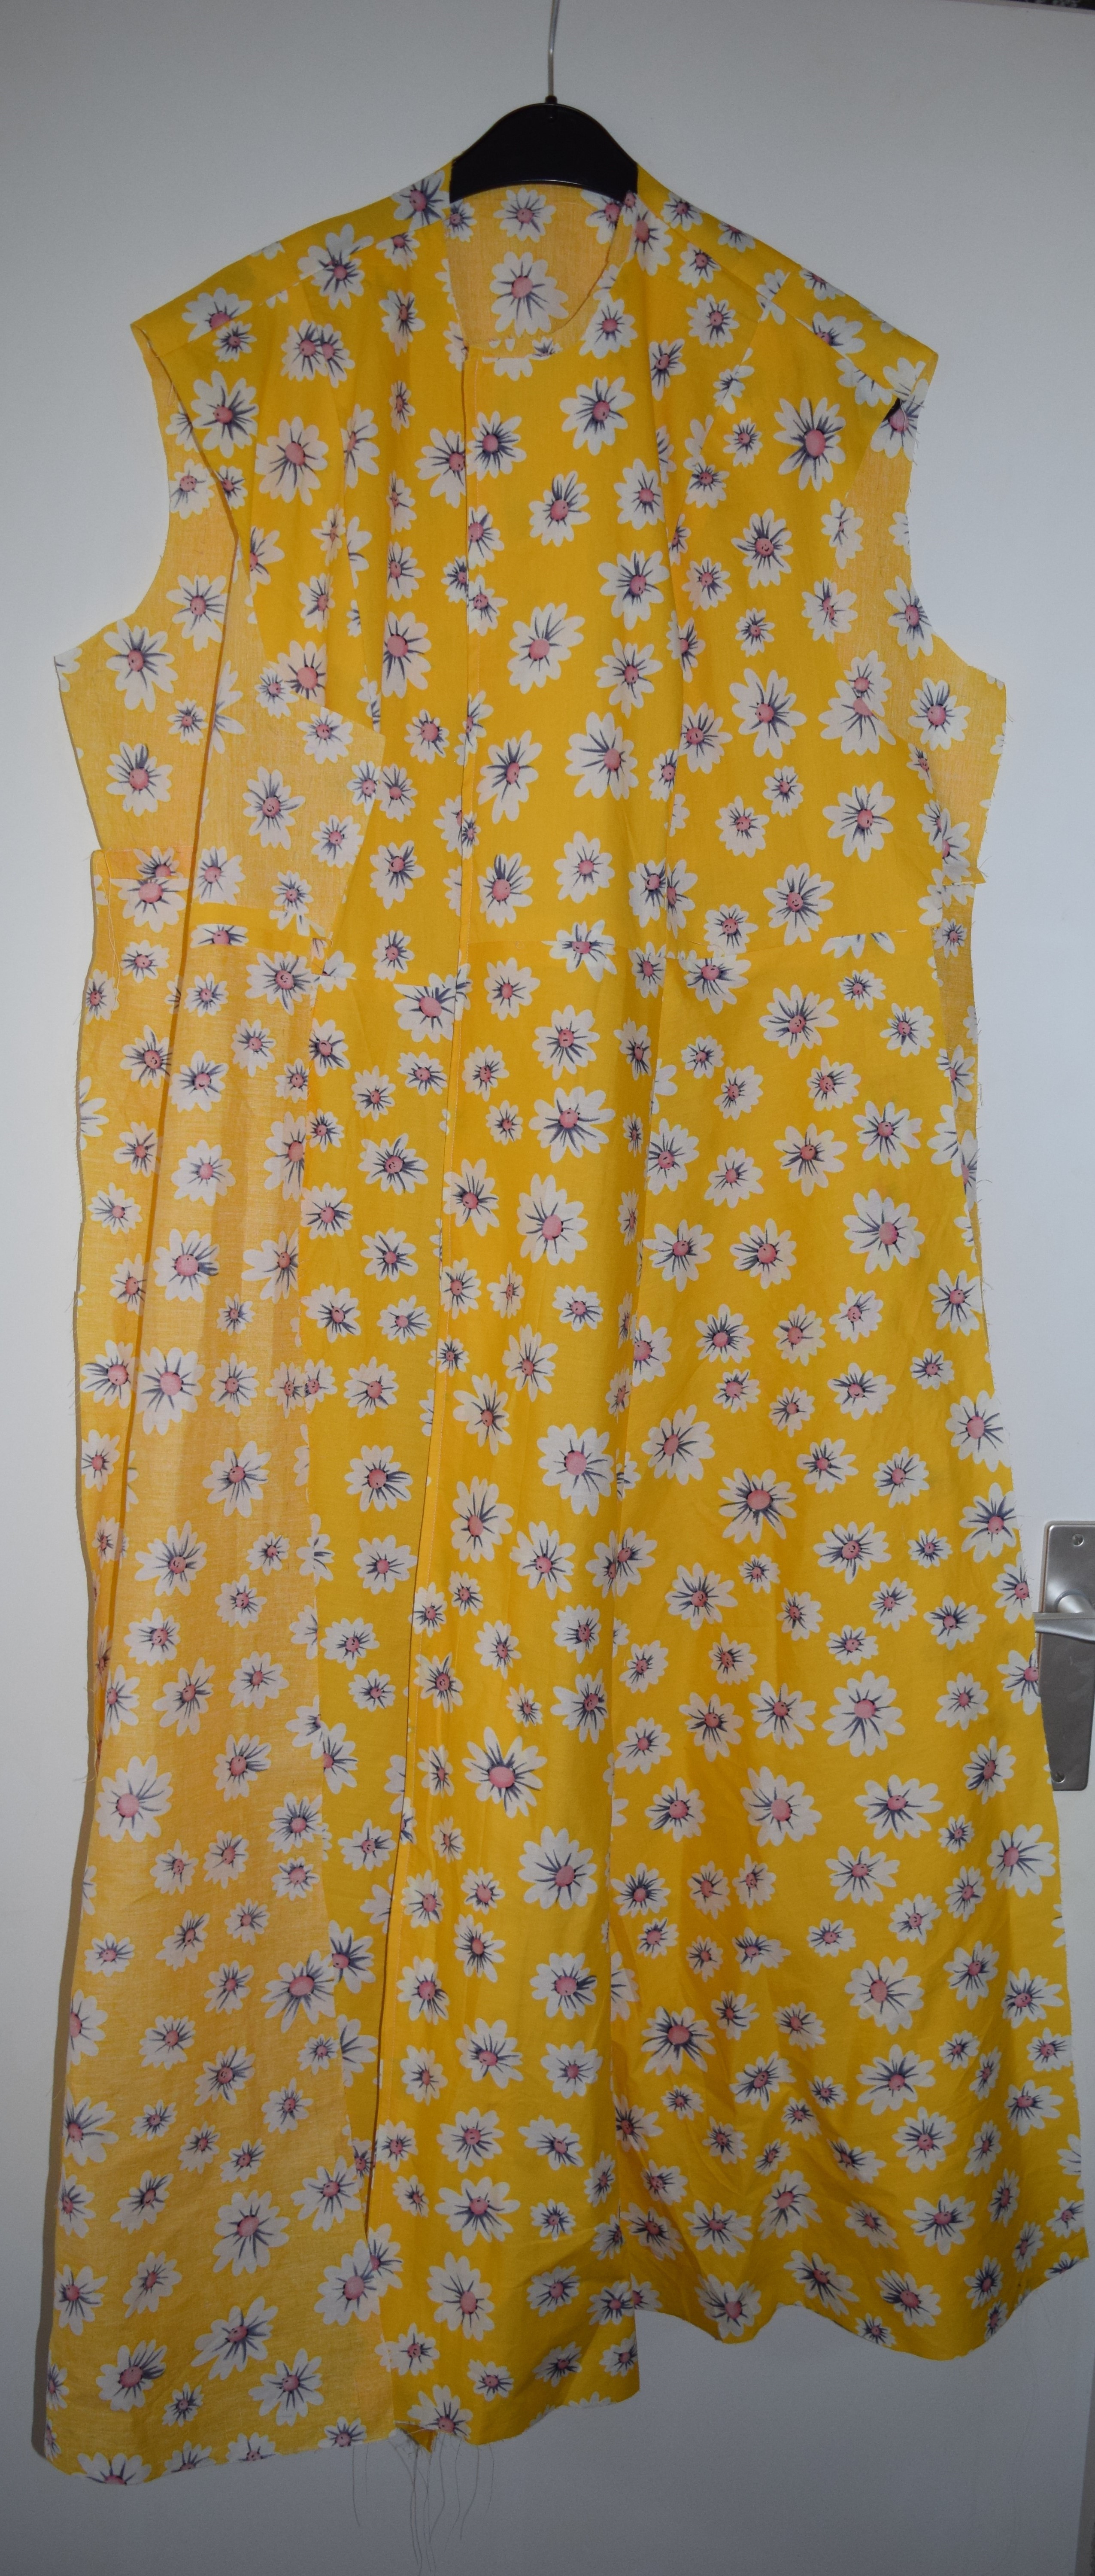 Sew-along: My Image #19: M1963 shirtdress -yellow dress